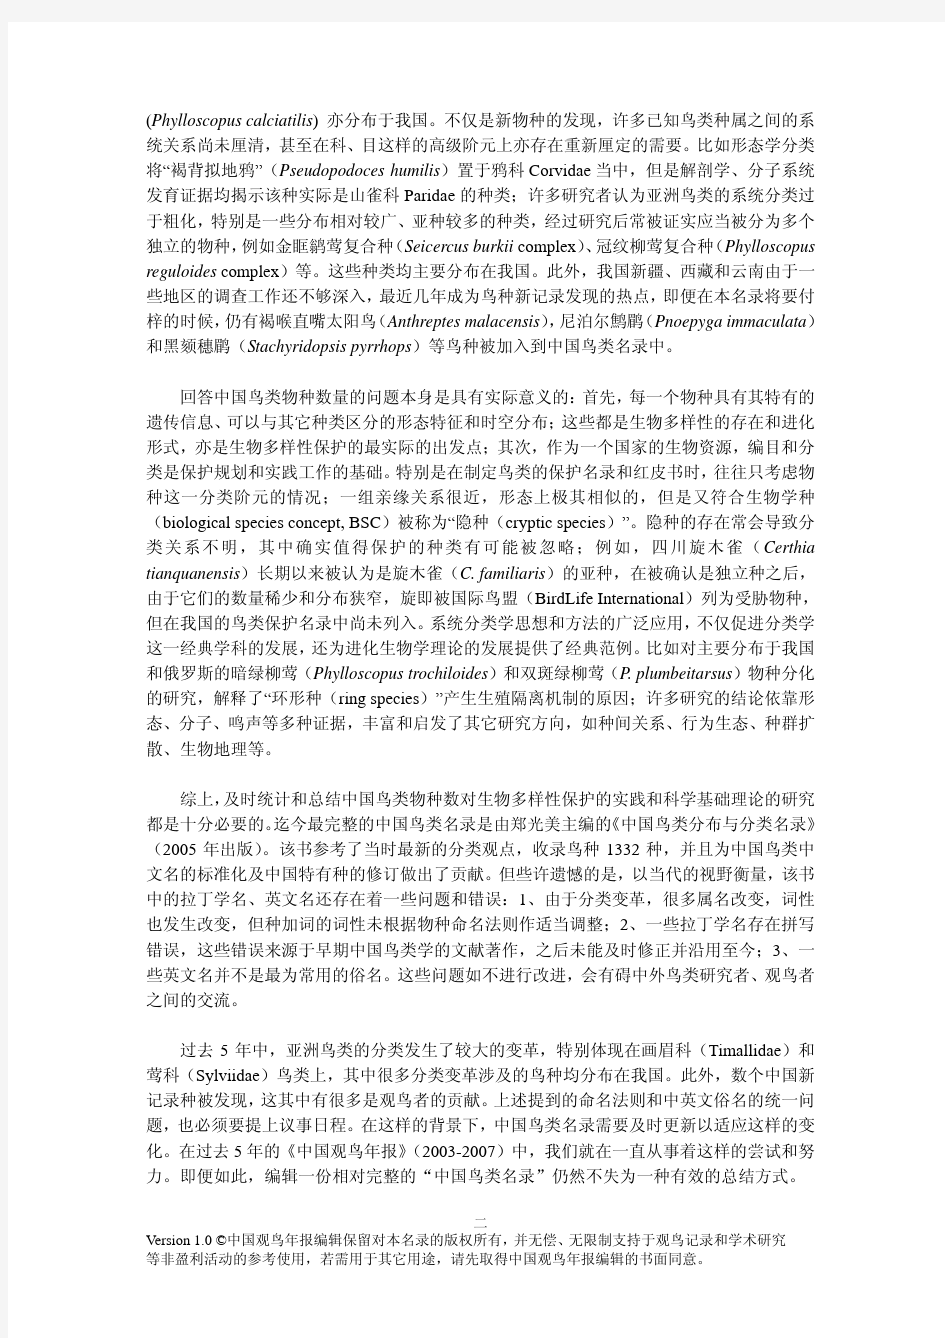 中国鸟类名录v1.0 (2010)